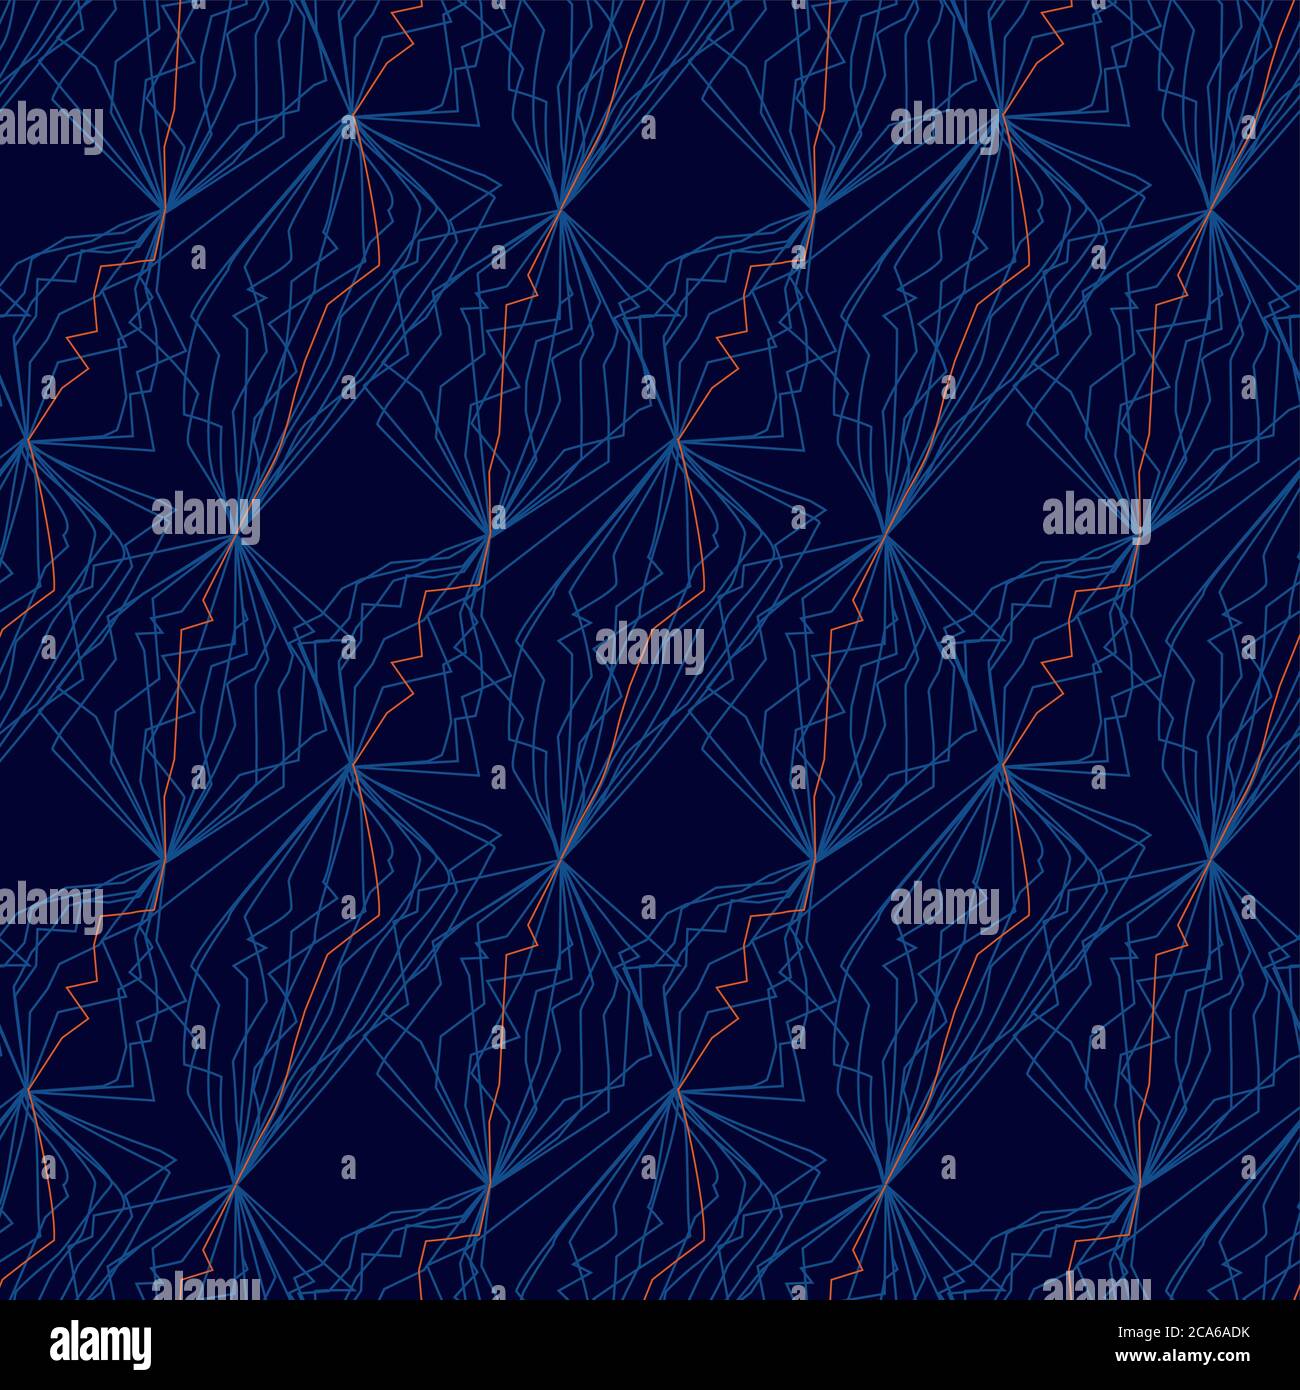 Dekorative Netzlinien Nahtloses Muster für Hintergrund, Stoff, Textil, Wrap, Oberfläche, Web und Print-Design. Futuristische Geometrie im Sportstil. C Stock Vektor